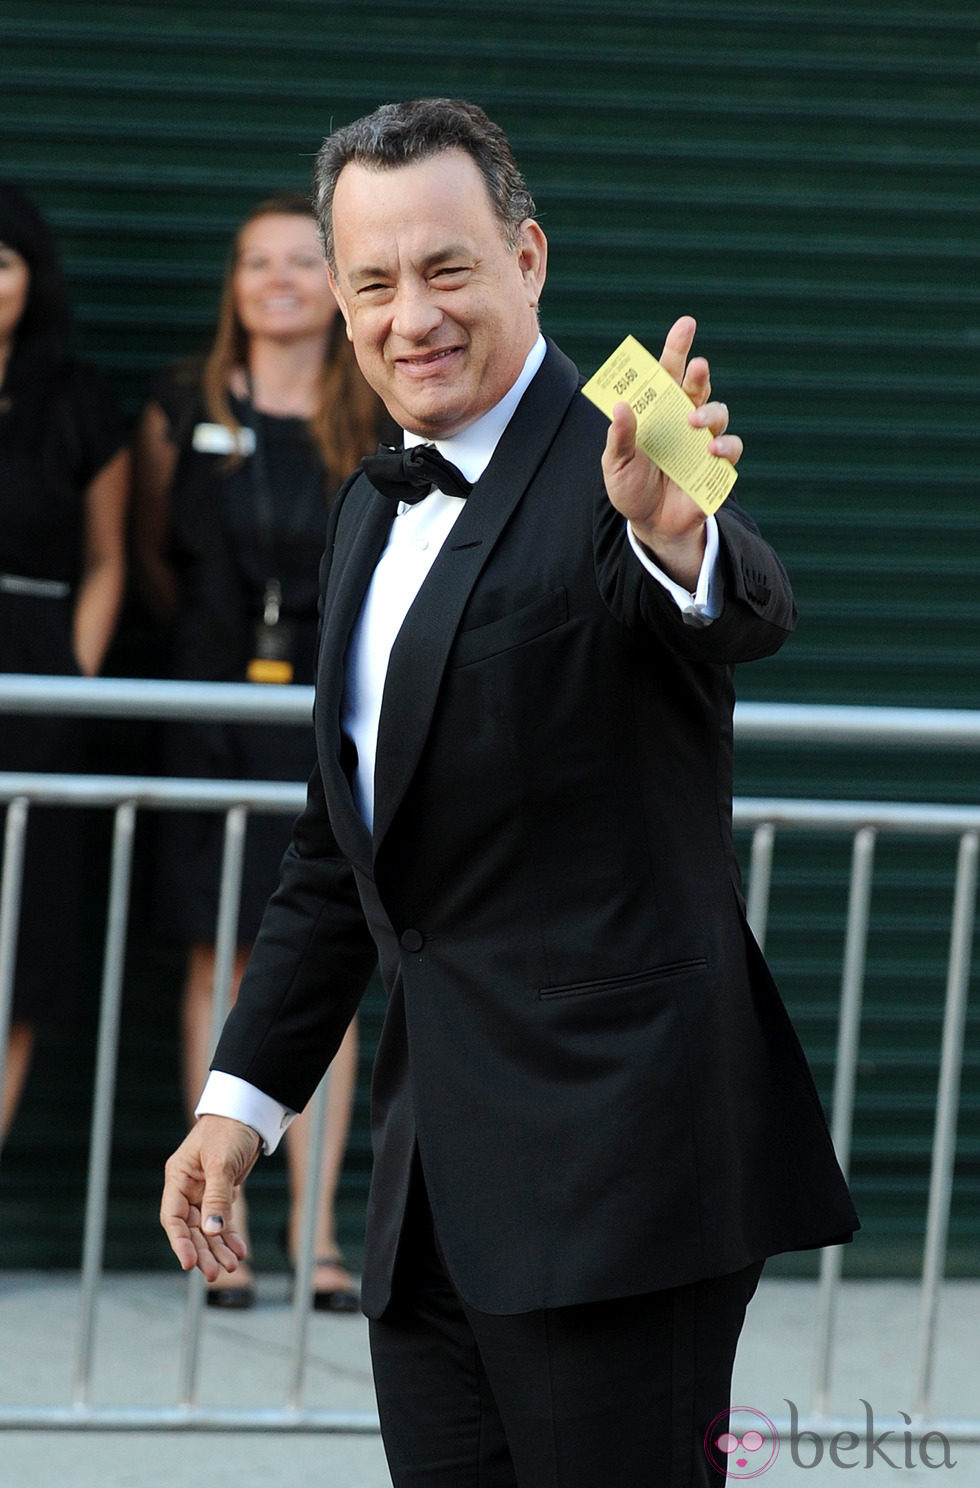 Tom Hanks en el Belasco Theater para la gala de los BAFTA Brits